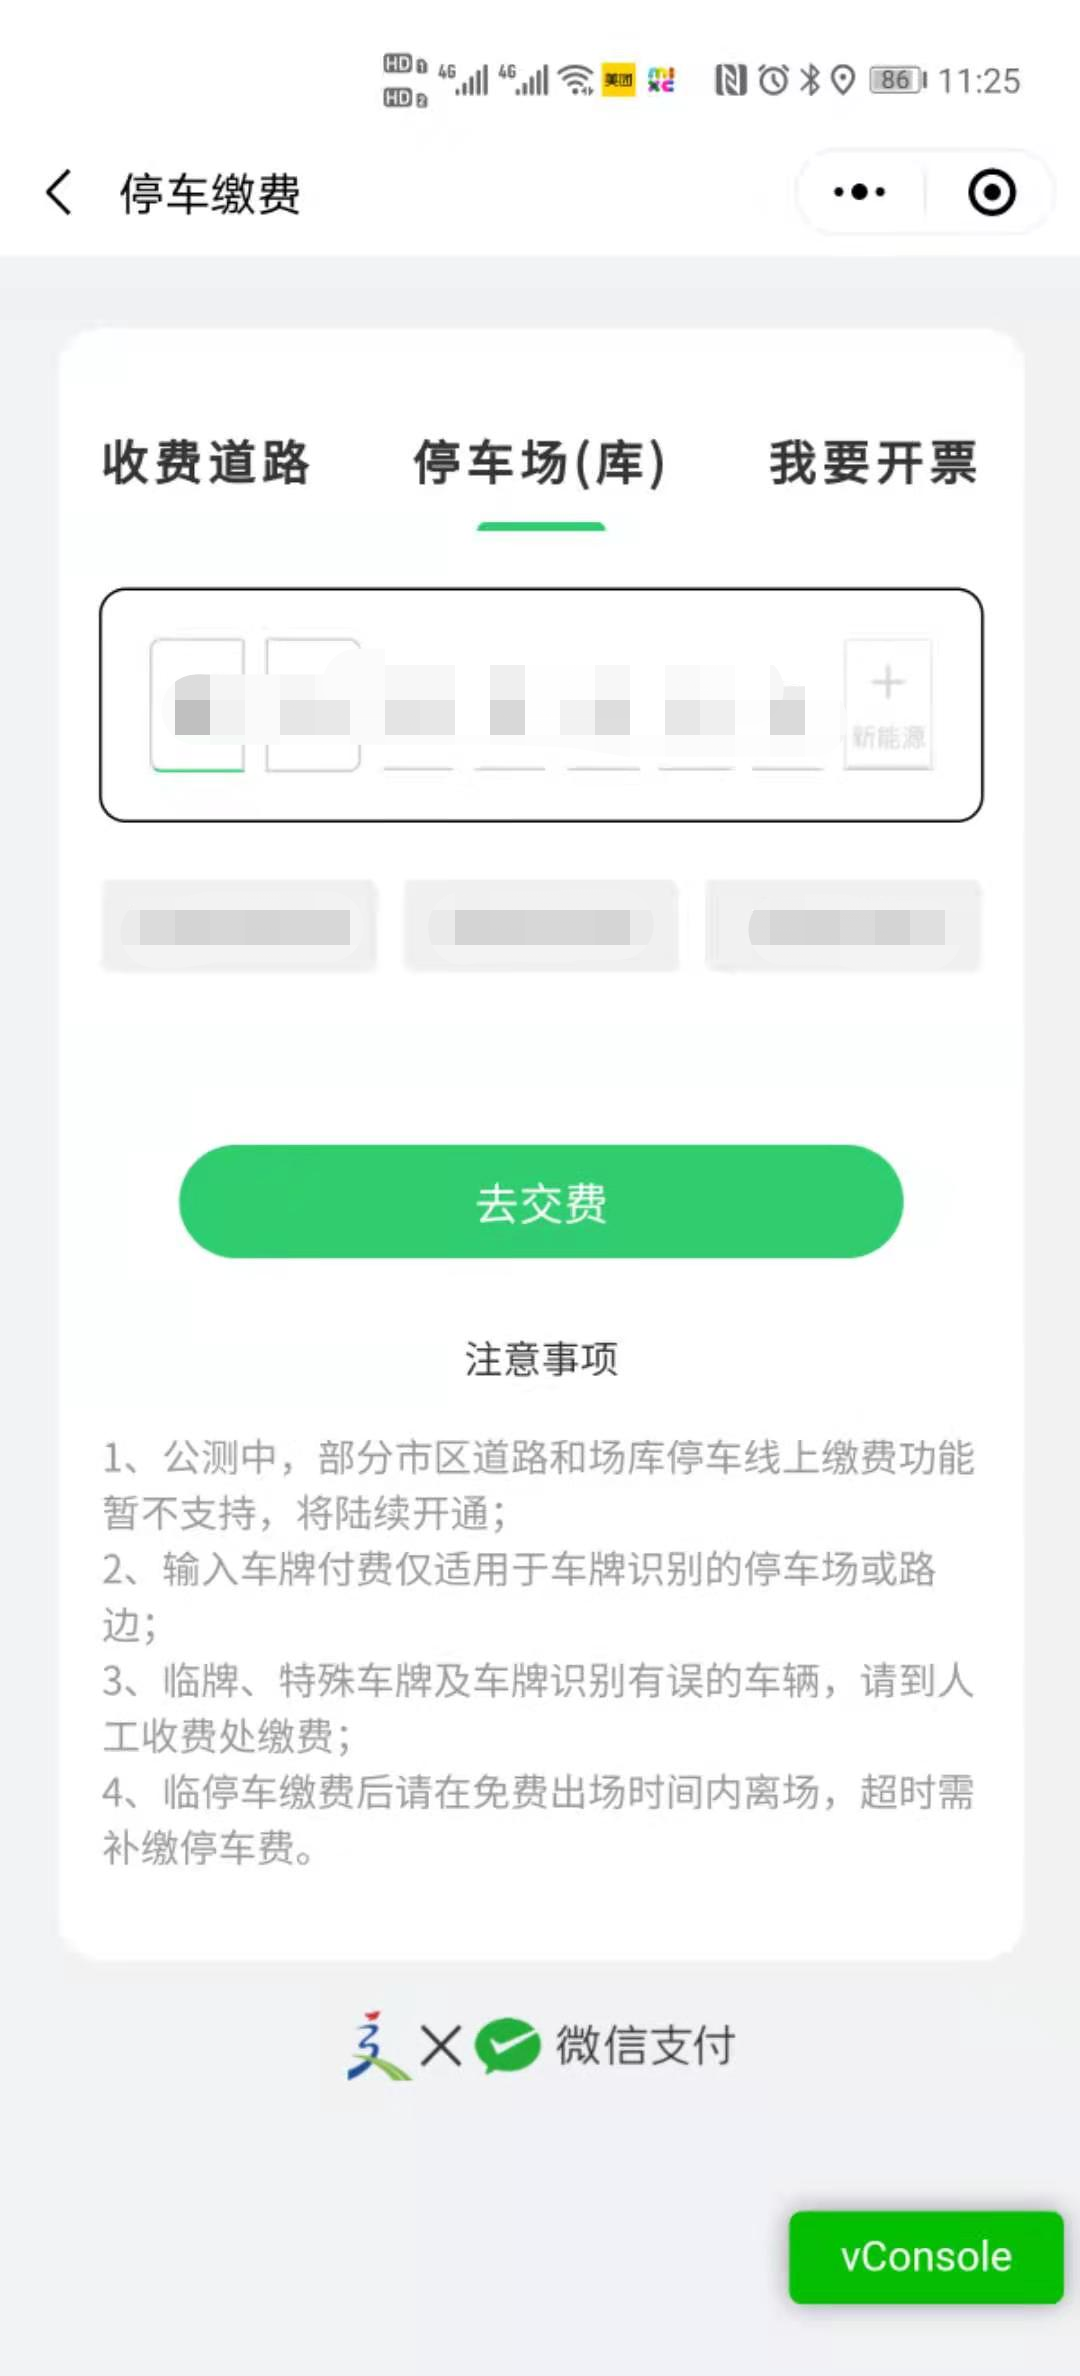 “上海停车”小程序新增医院停车预约功能，已在新华医院试点